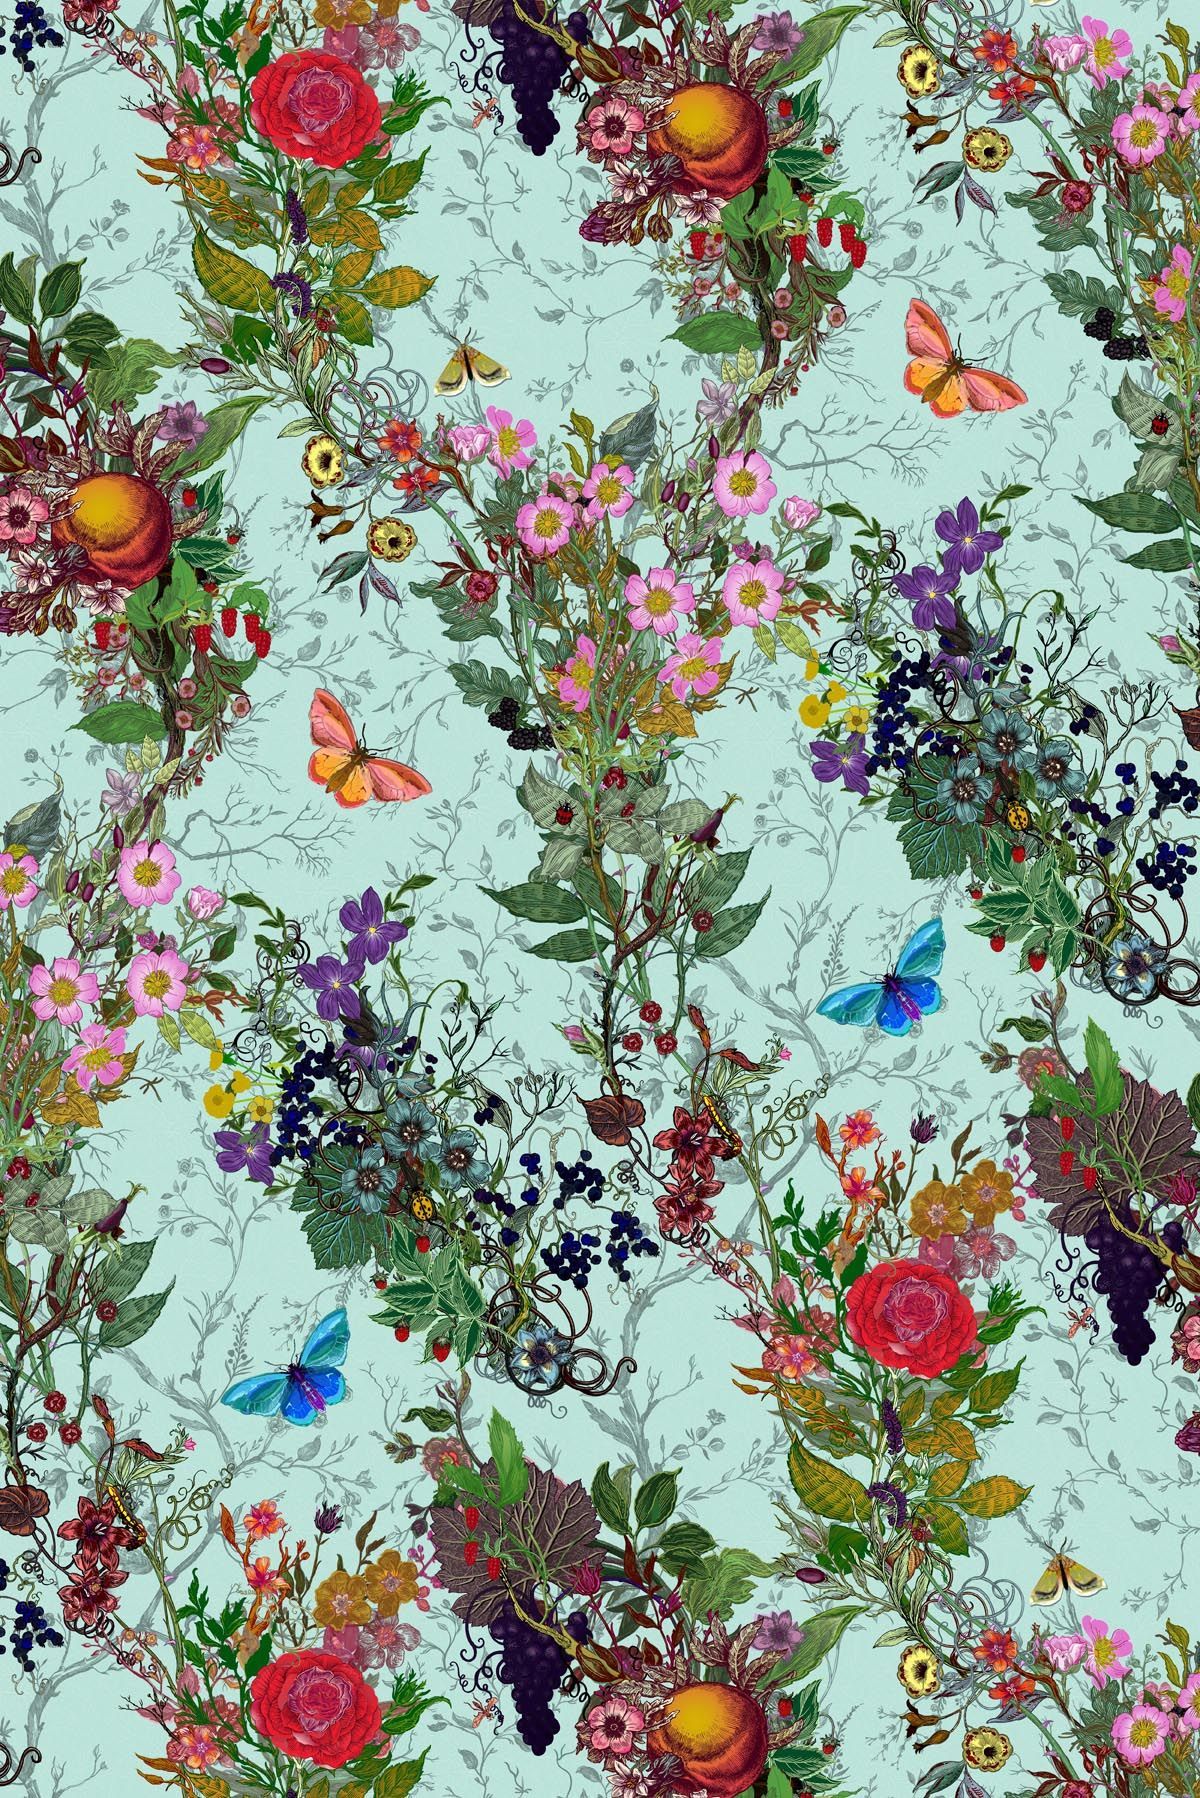 꽃 패턴 벽지,꽃,식물,야생화,직물,꽃 무늬 디자인